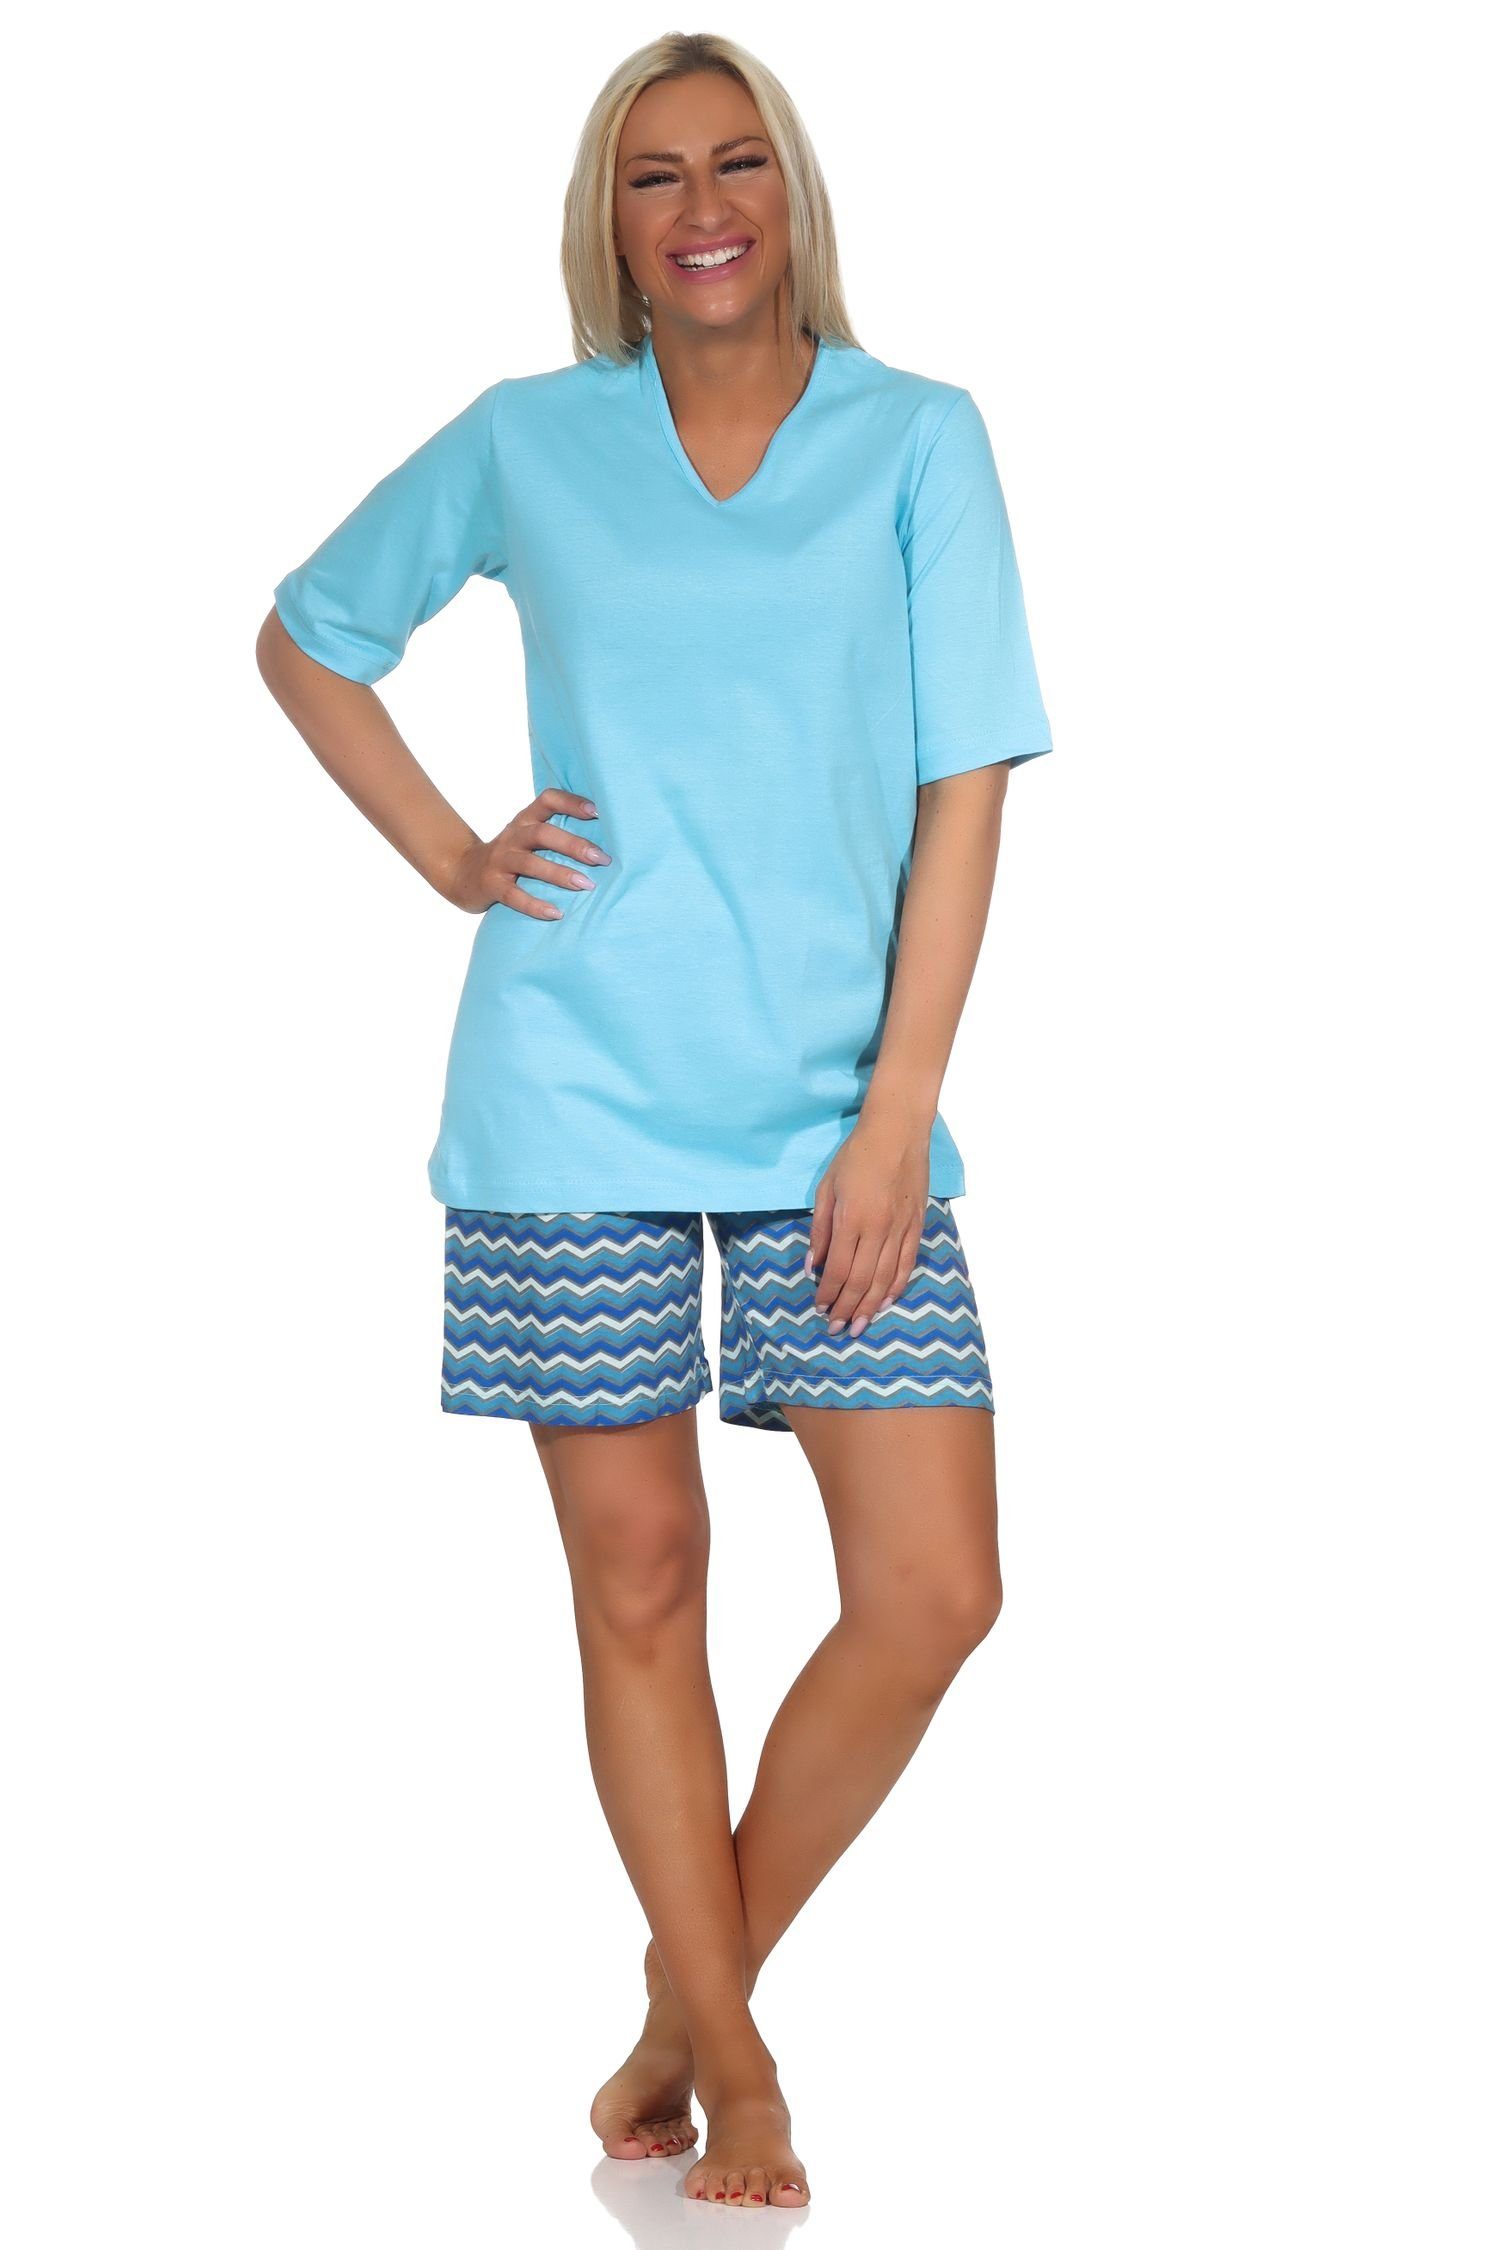 Pyjama Normann kurz in Farben Shorty blau mit gemusterten Damen Shorts Pyjama strahlenden